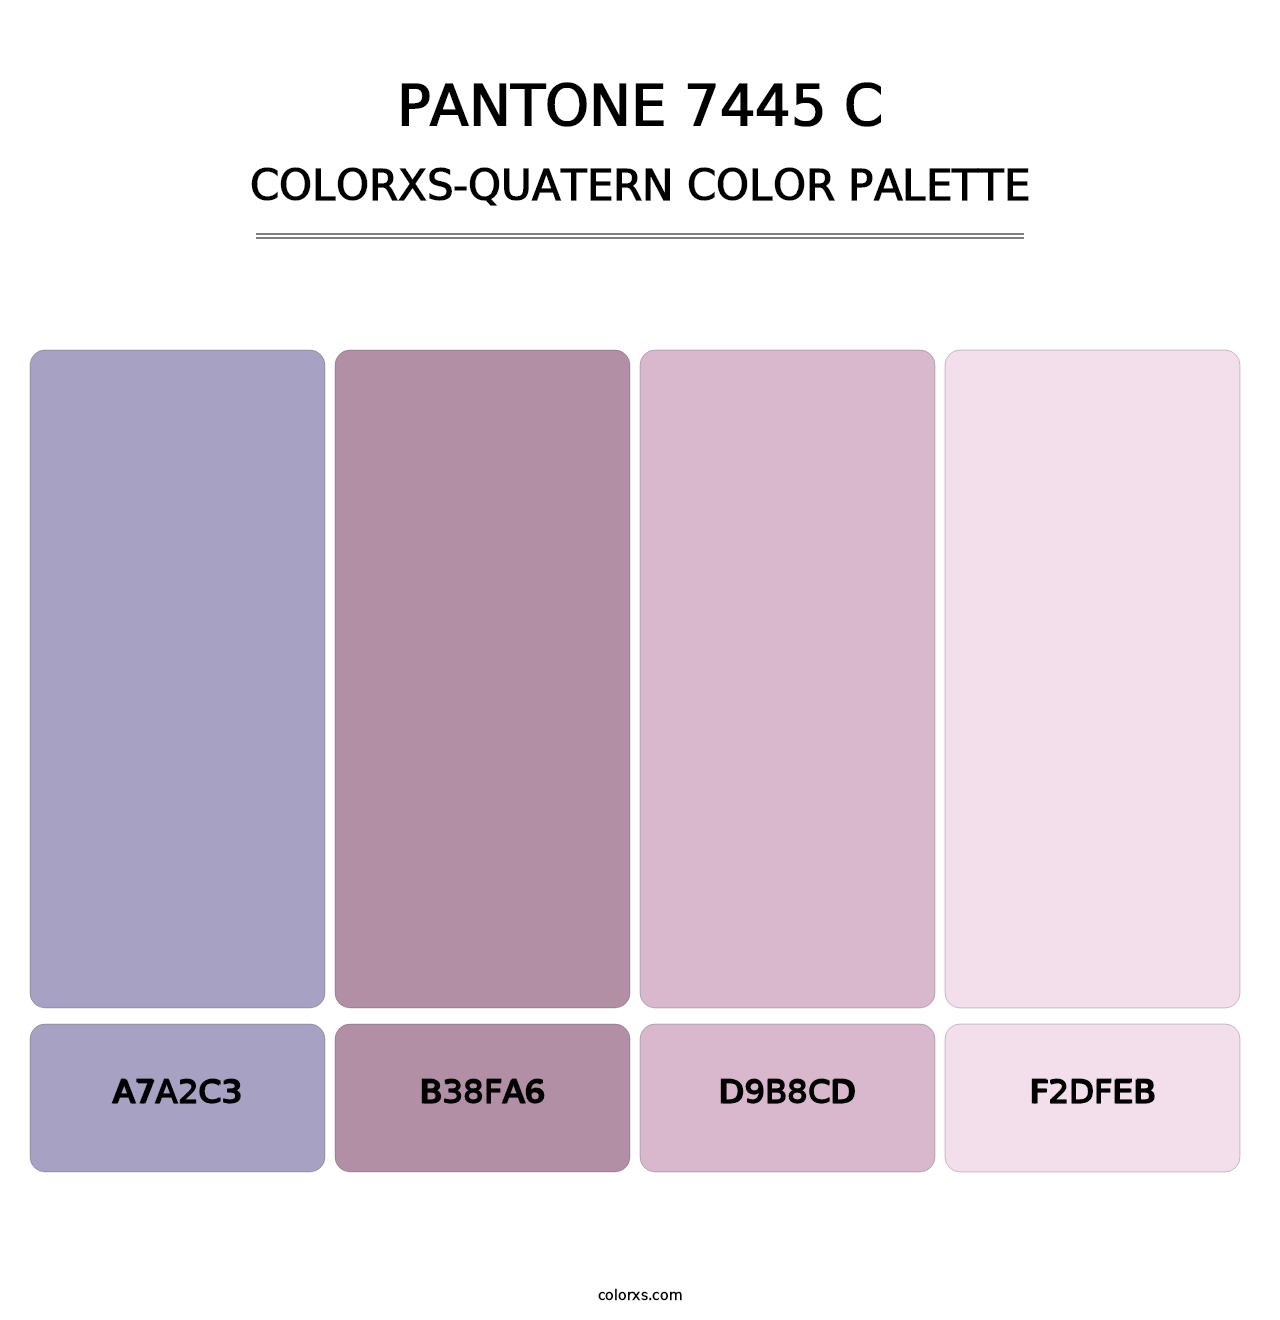 PANTONE 7445 C - Colorxs Quatern Palette